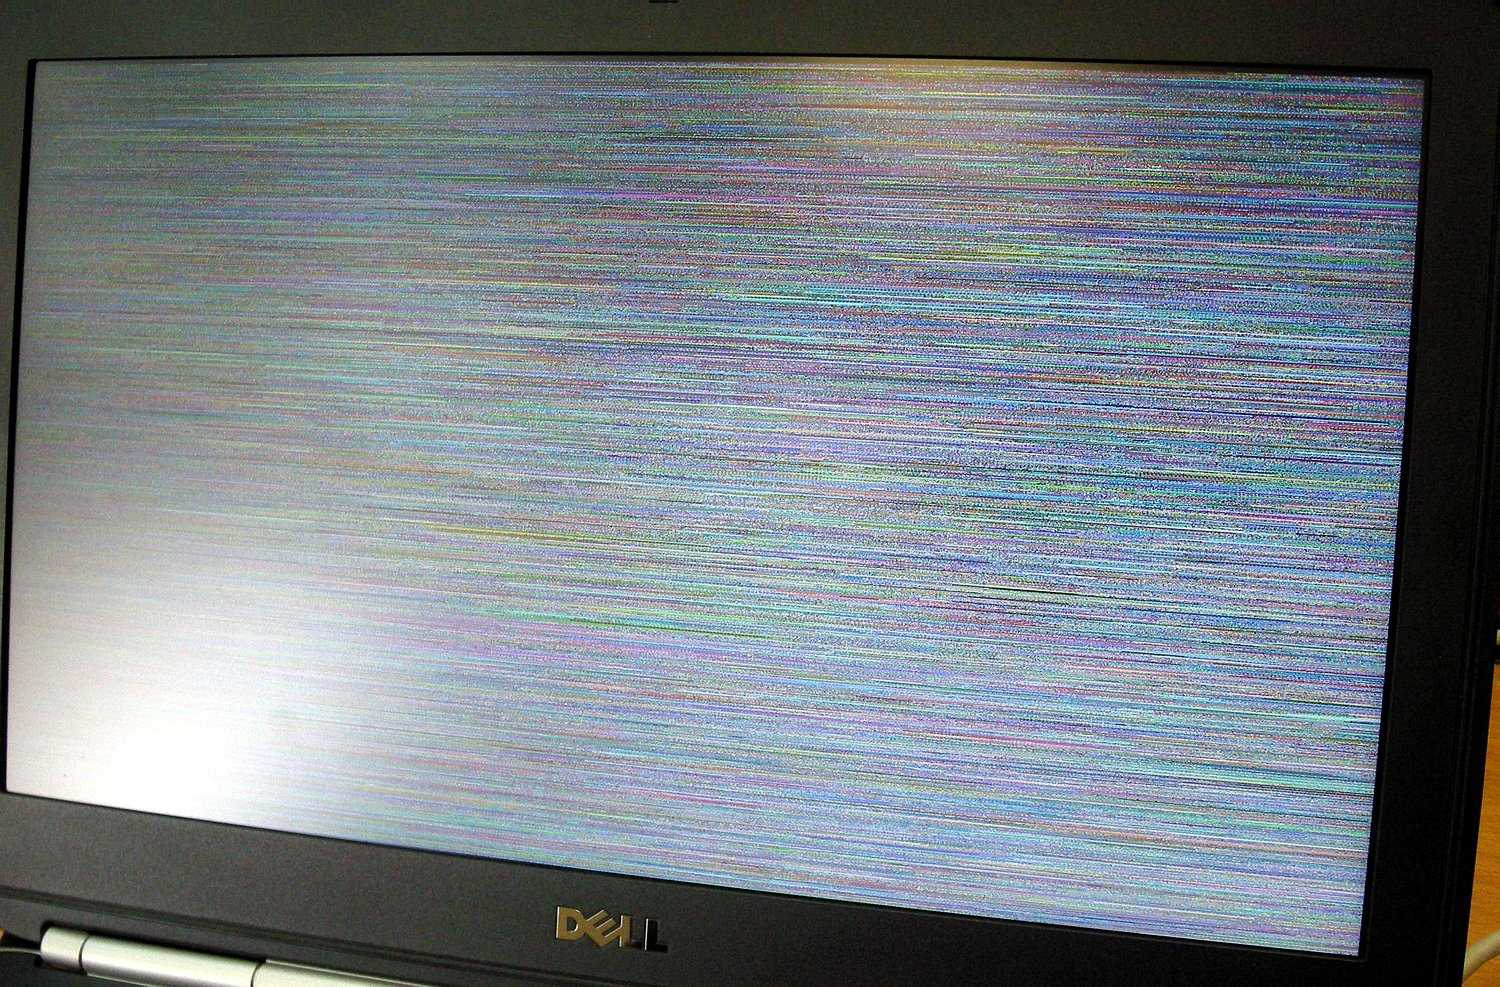 Телевизор пошел полосами. Телевизор самсунг рябит экран. Вертикальные полосы на экране телевизора. Горизонтальные полосы на экране телевизора. Рябь на мониторе.